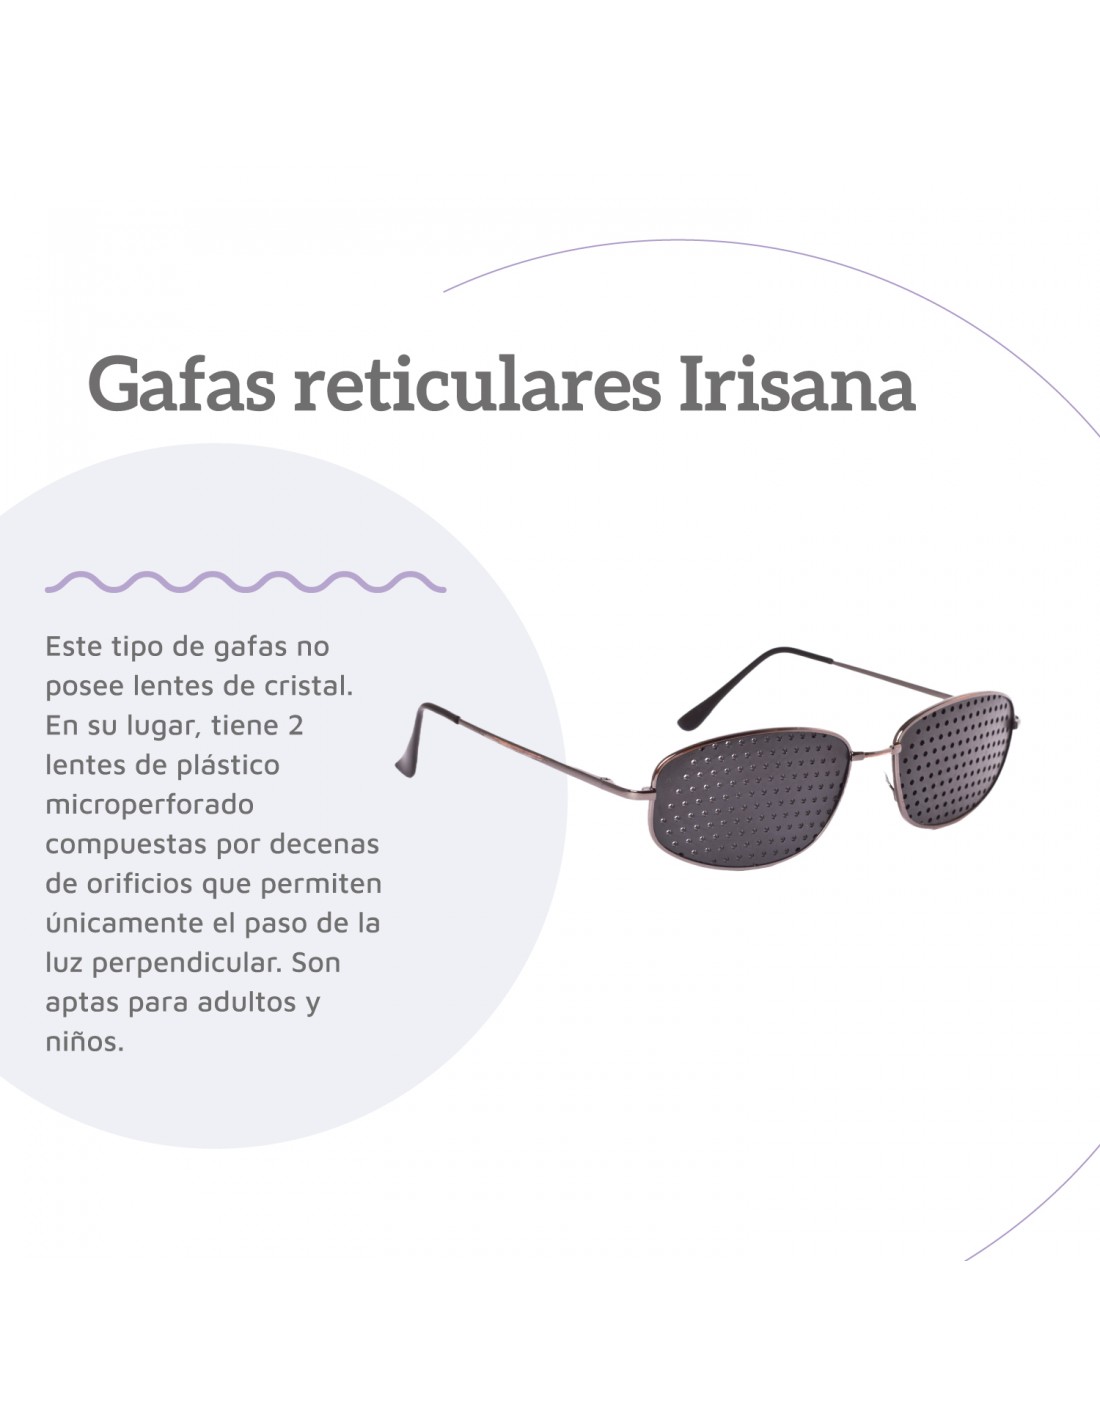 Gafas reticulares para vision natural